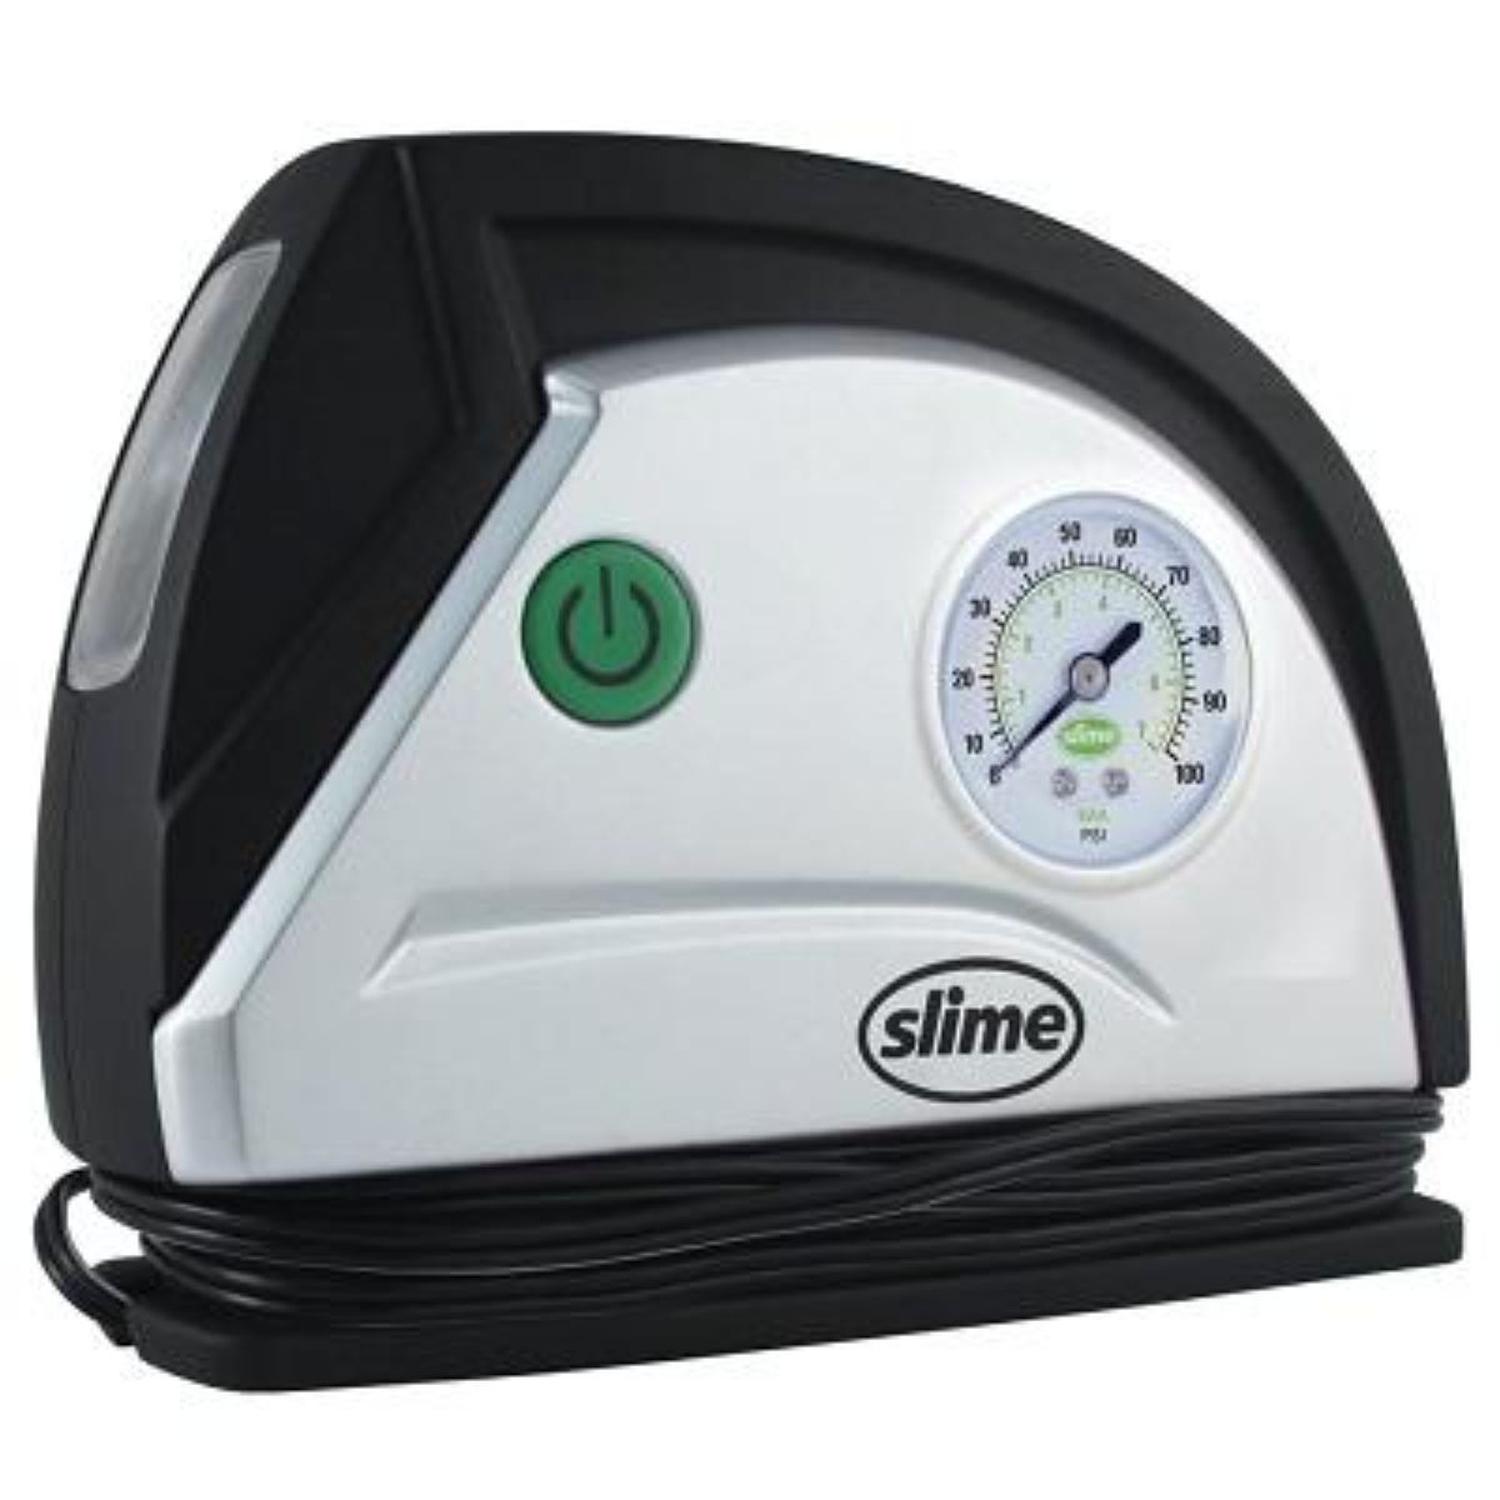 Compresor Aire Llantas Slime Estandar 8 minutos Slime